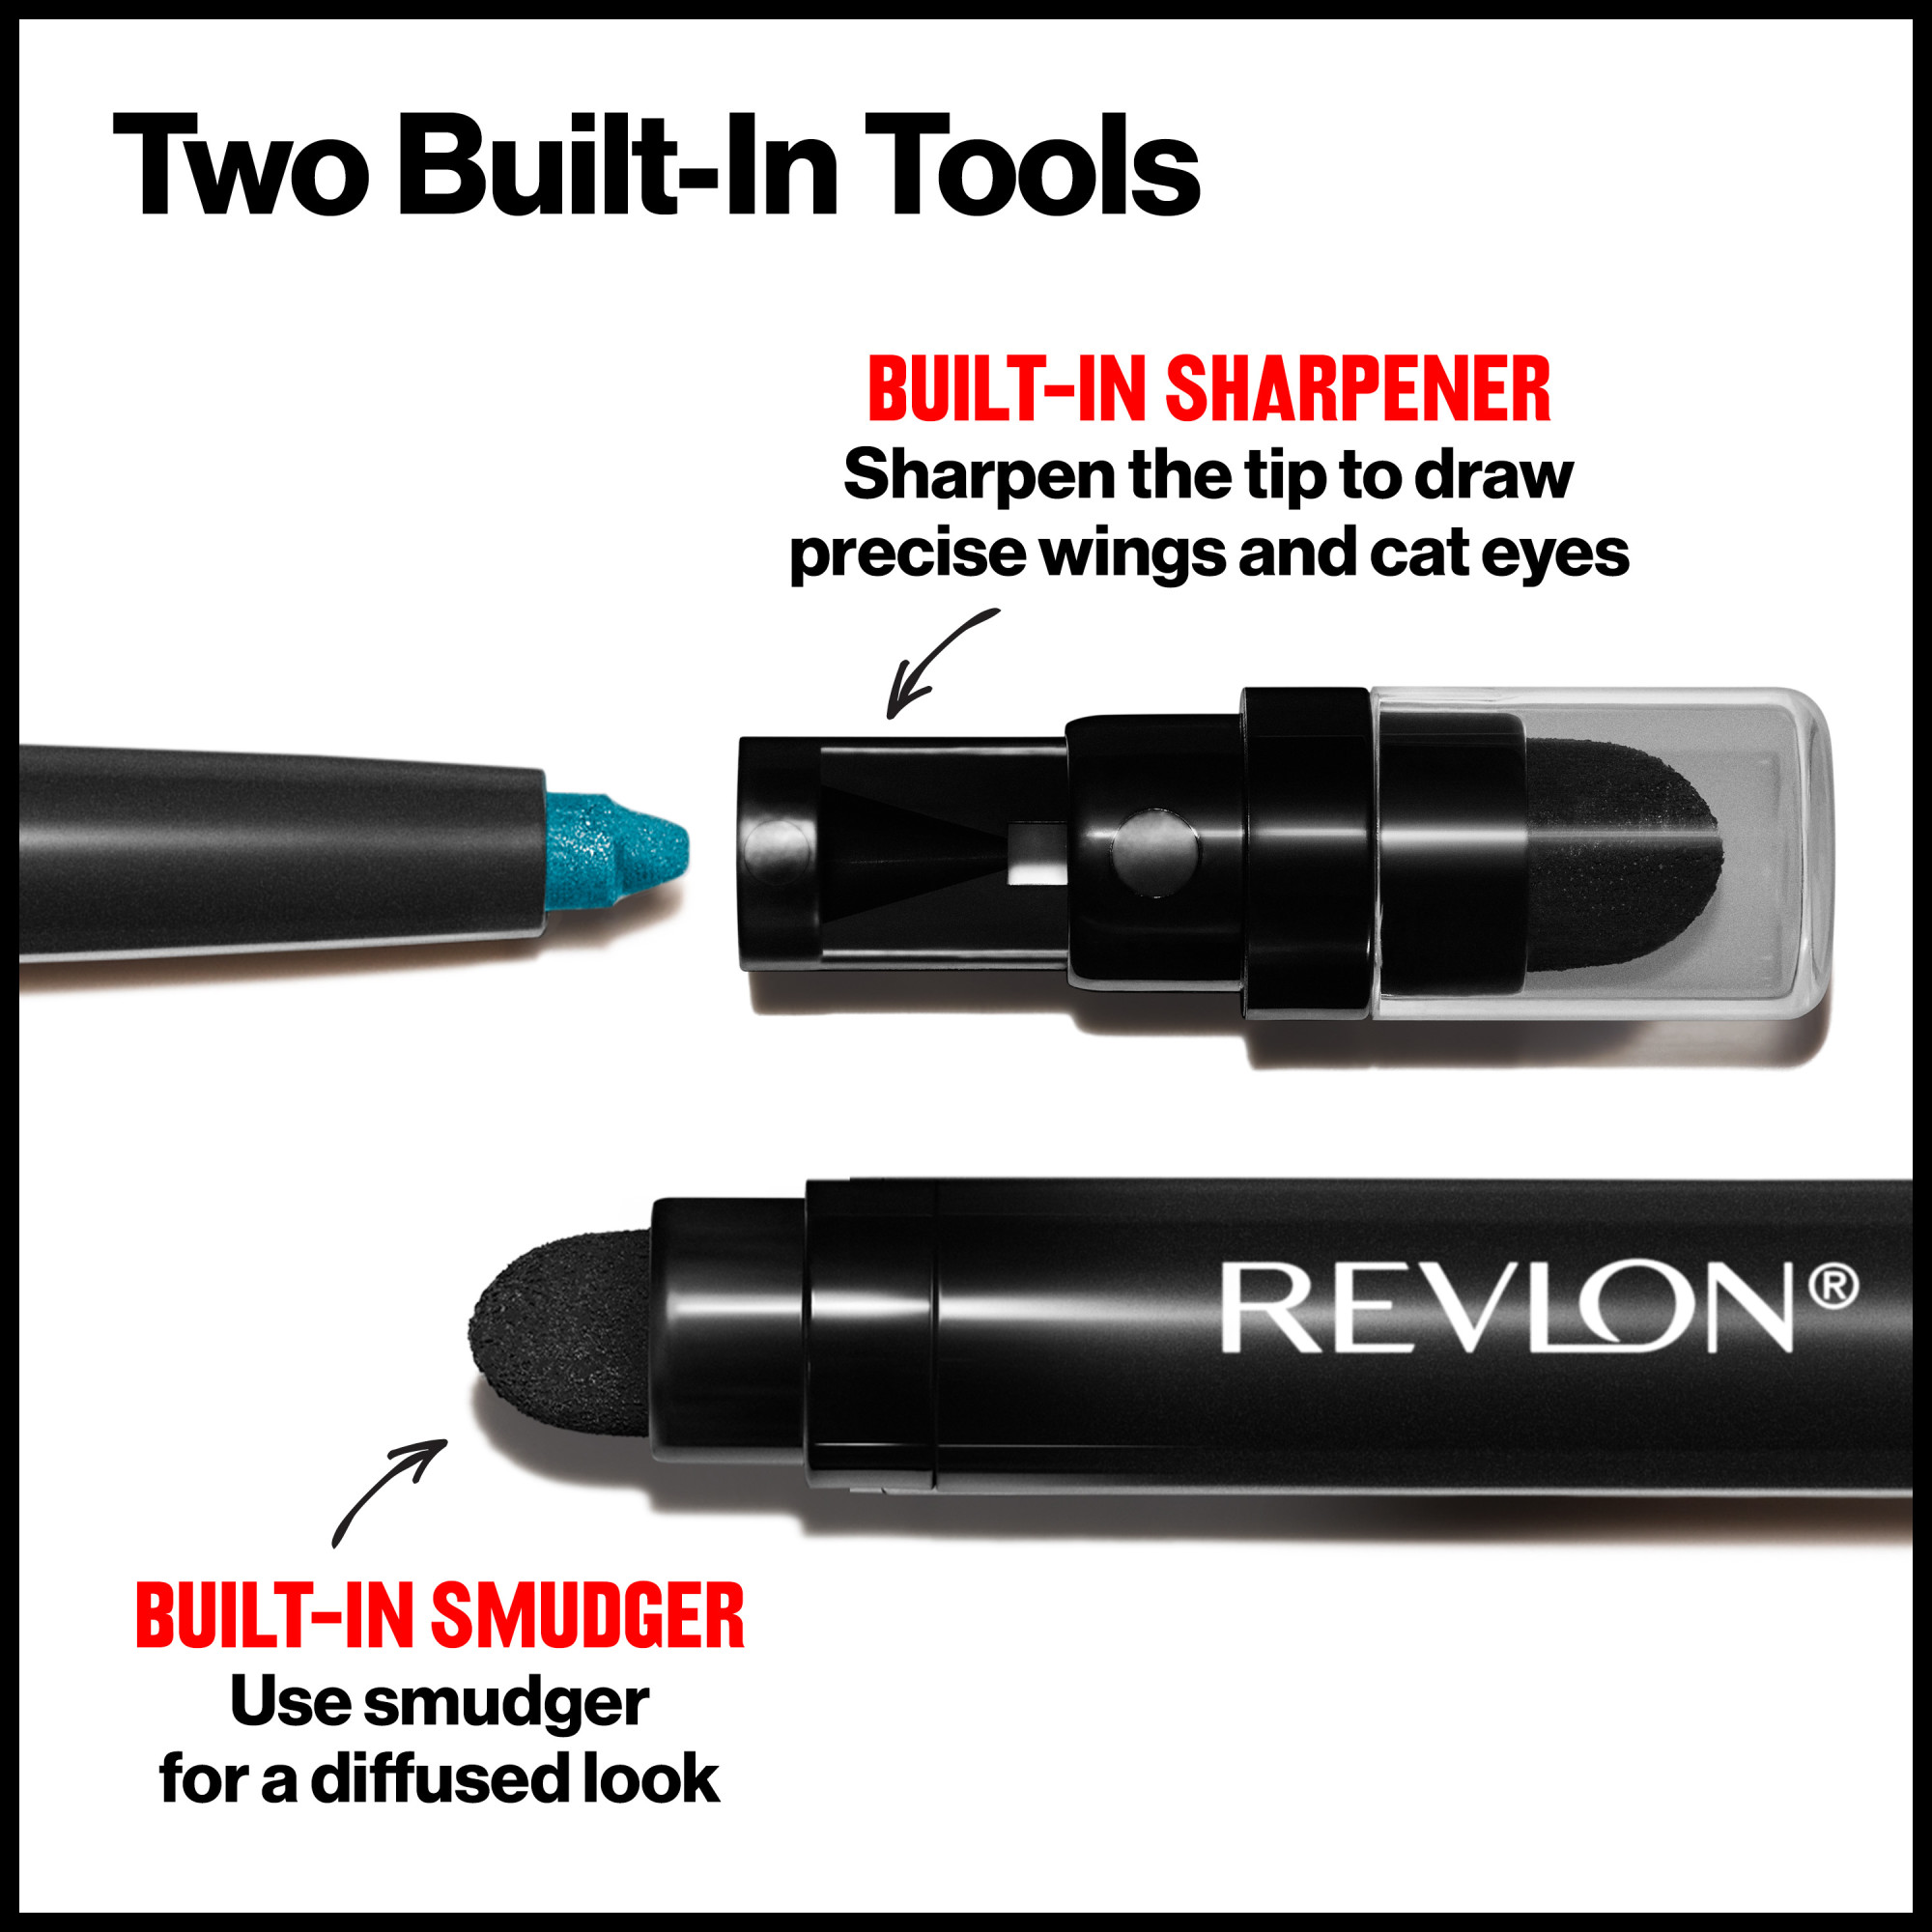 Revlon ColorStay Waterproof Eyeliner Pencil, 24HR Wear, Built-in Sharpener, 201 Black, 0.01 oz - image 5 of 8